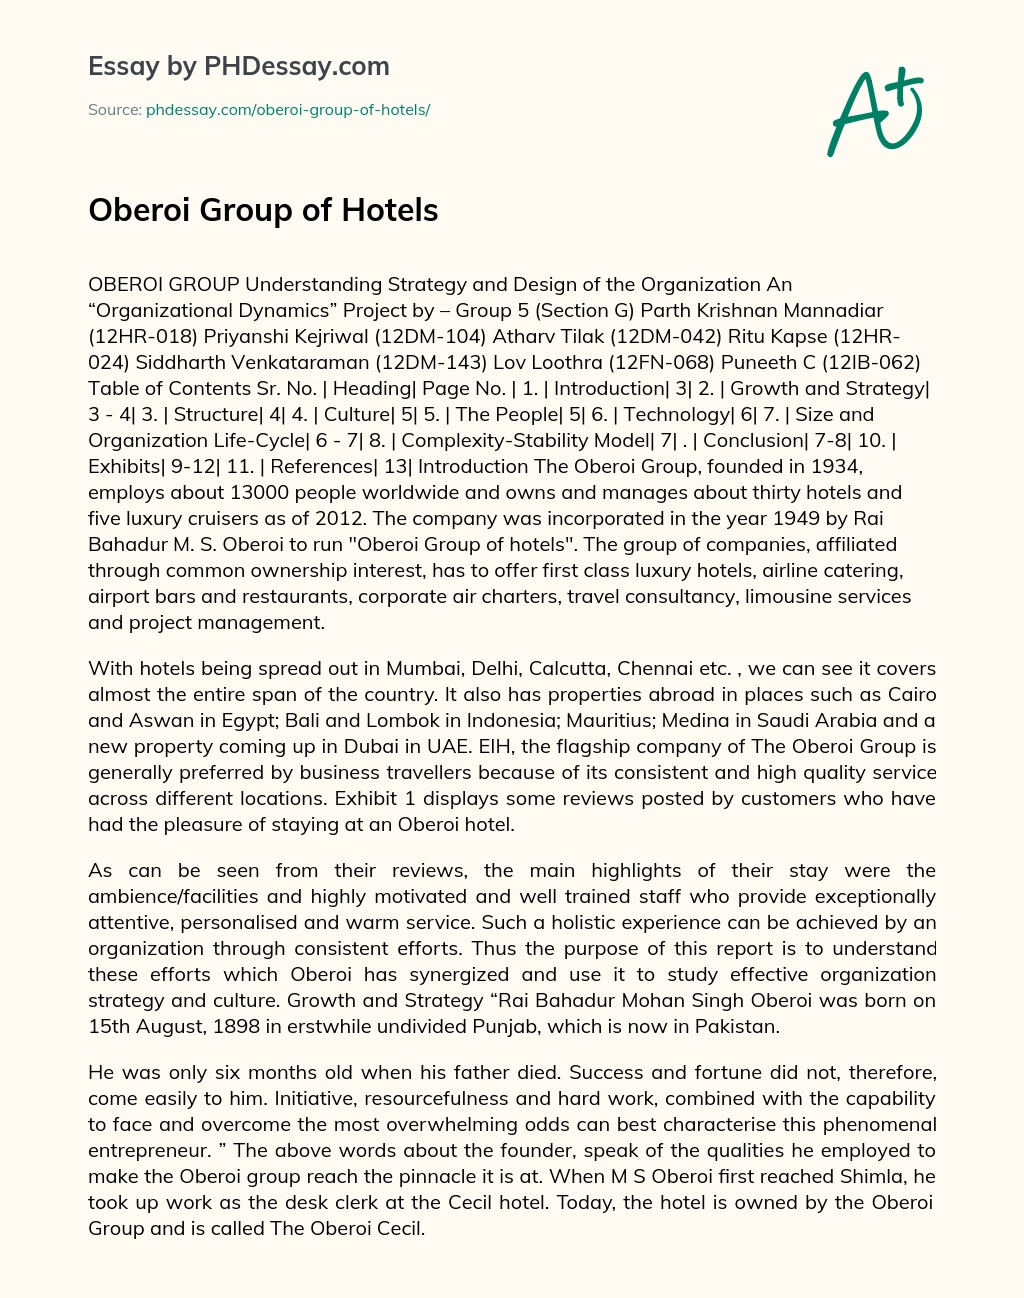 Oberoi Group of Hotels Narrative Essay essay